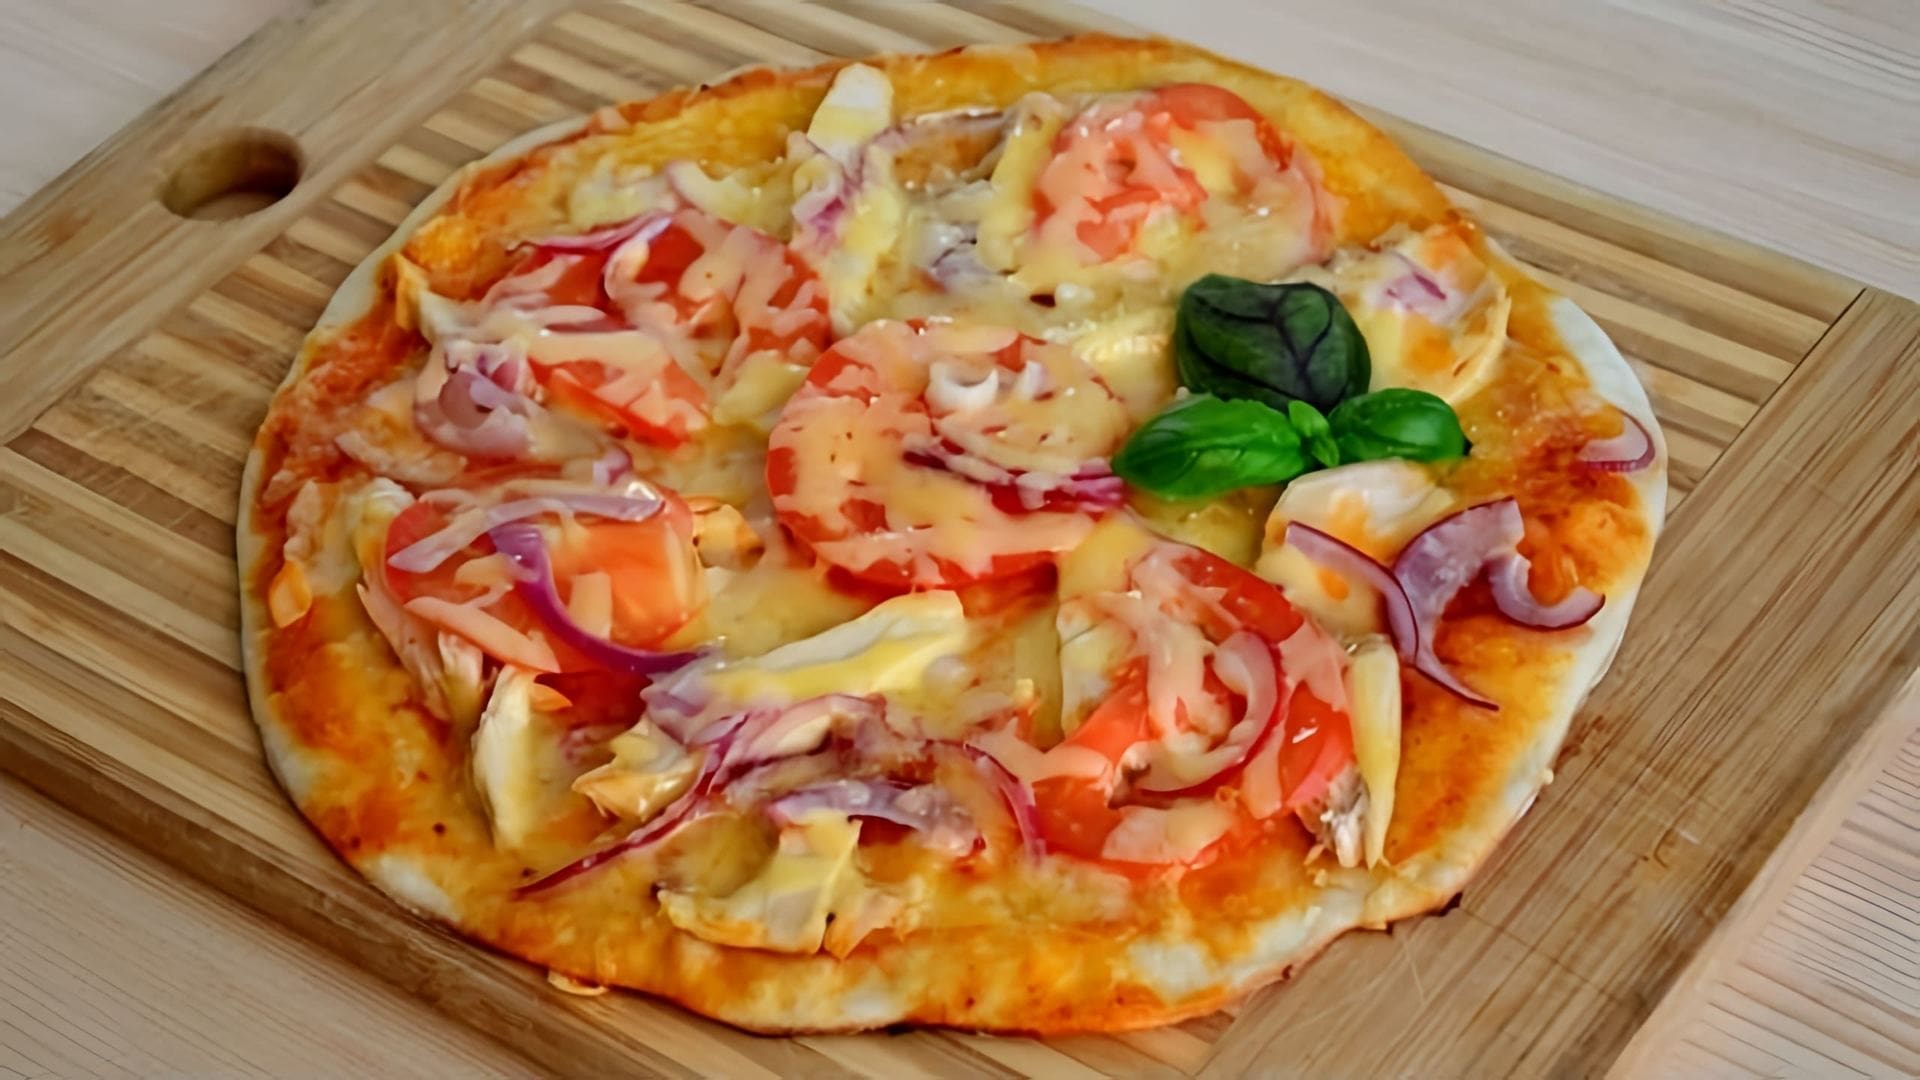 В этом видео демонстрируется рецепт приготовления тонкой итальянской пиццы